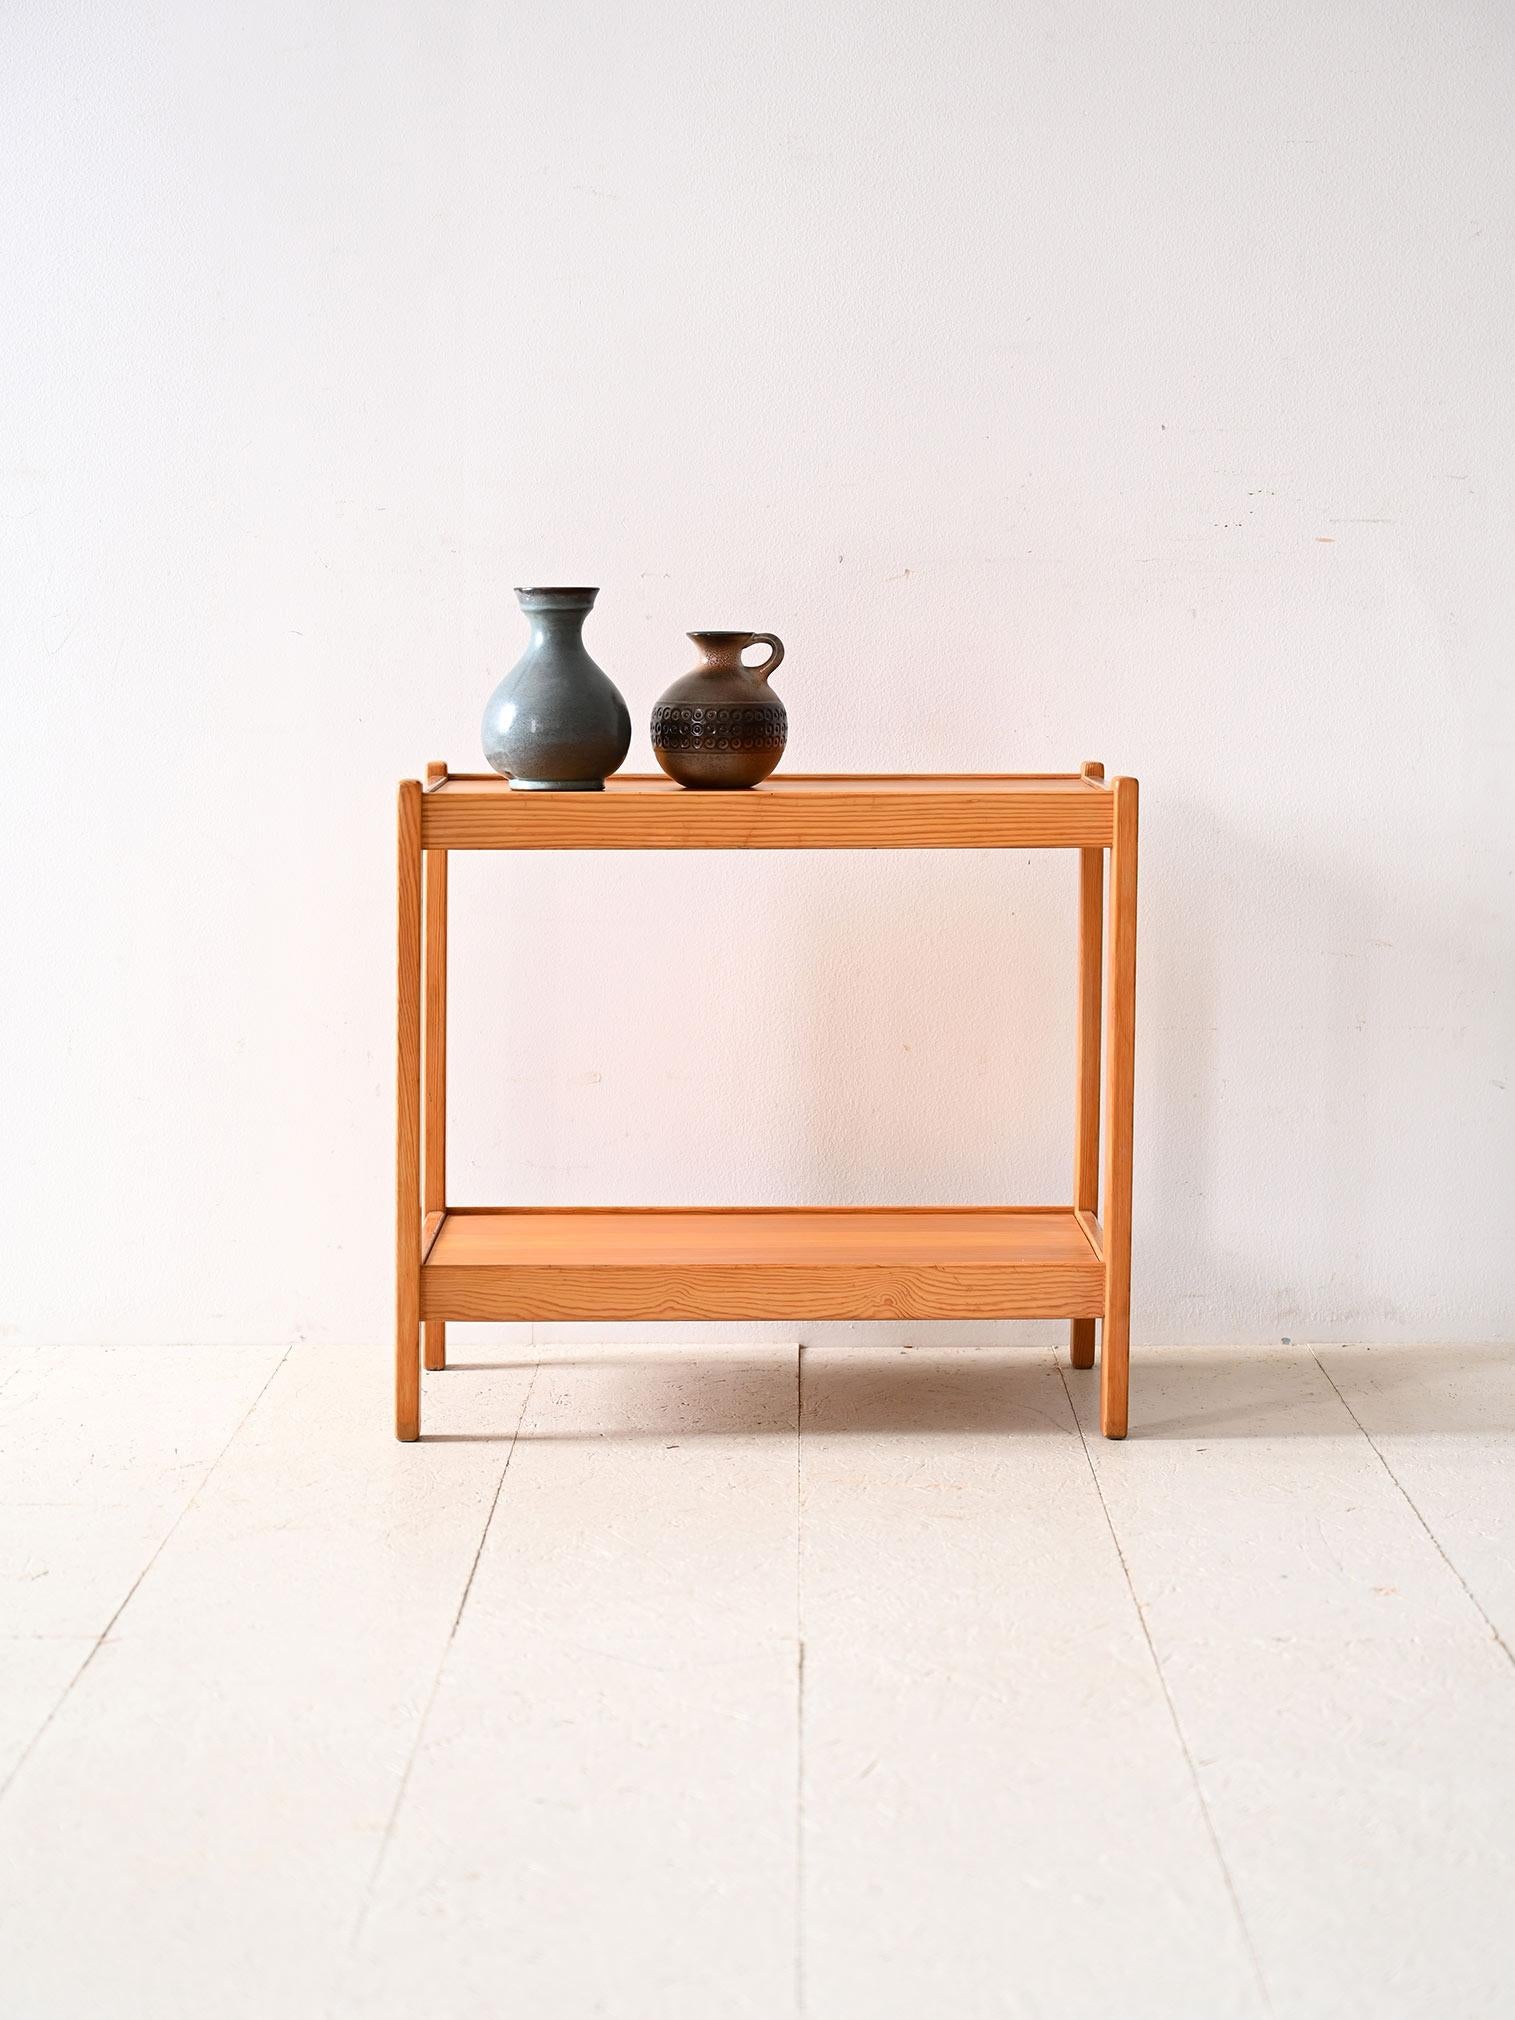 Table basse vintage en pin.
Un meuble moderne, au design minimaliste, qui reflète le goût scandinave pour la simplicité et la fonctionnalité. Il se compose d'un cadre en pin avec de longs pieds carrés sur lesquels reposent les deux étagères